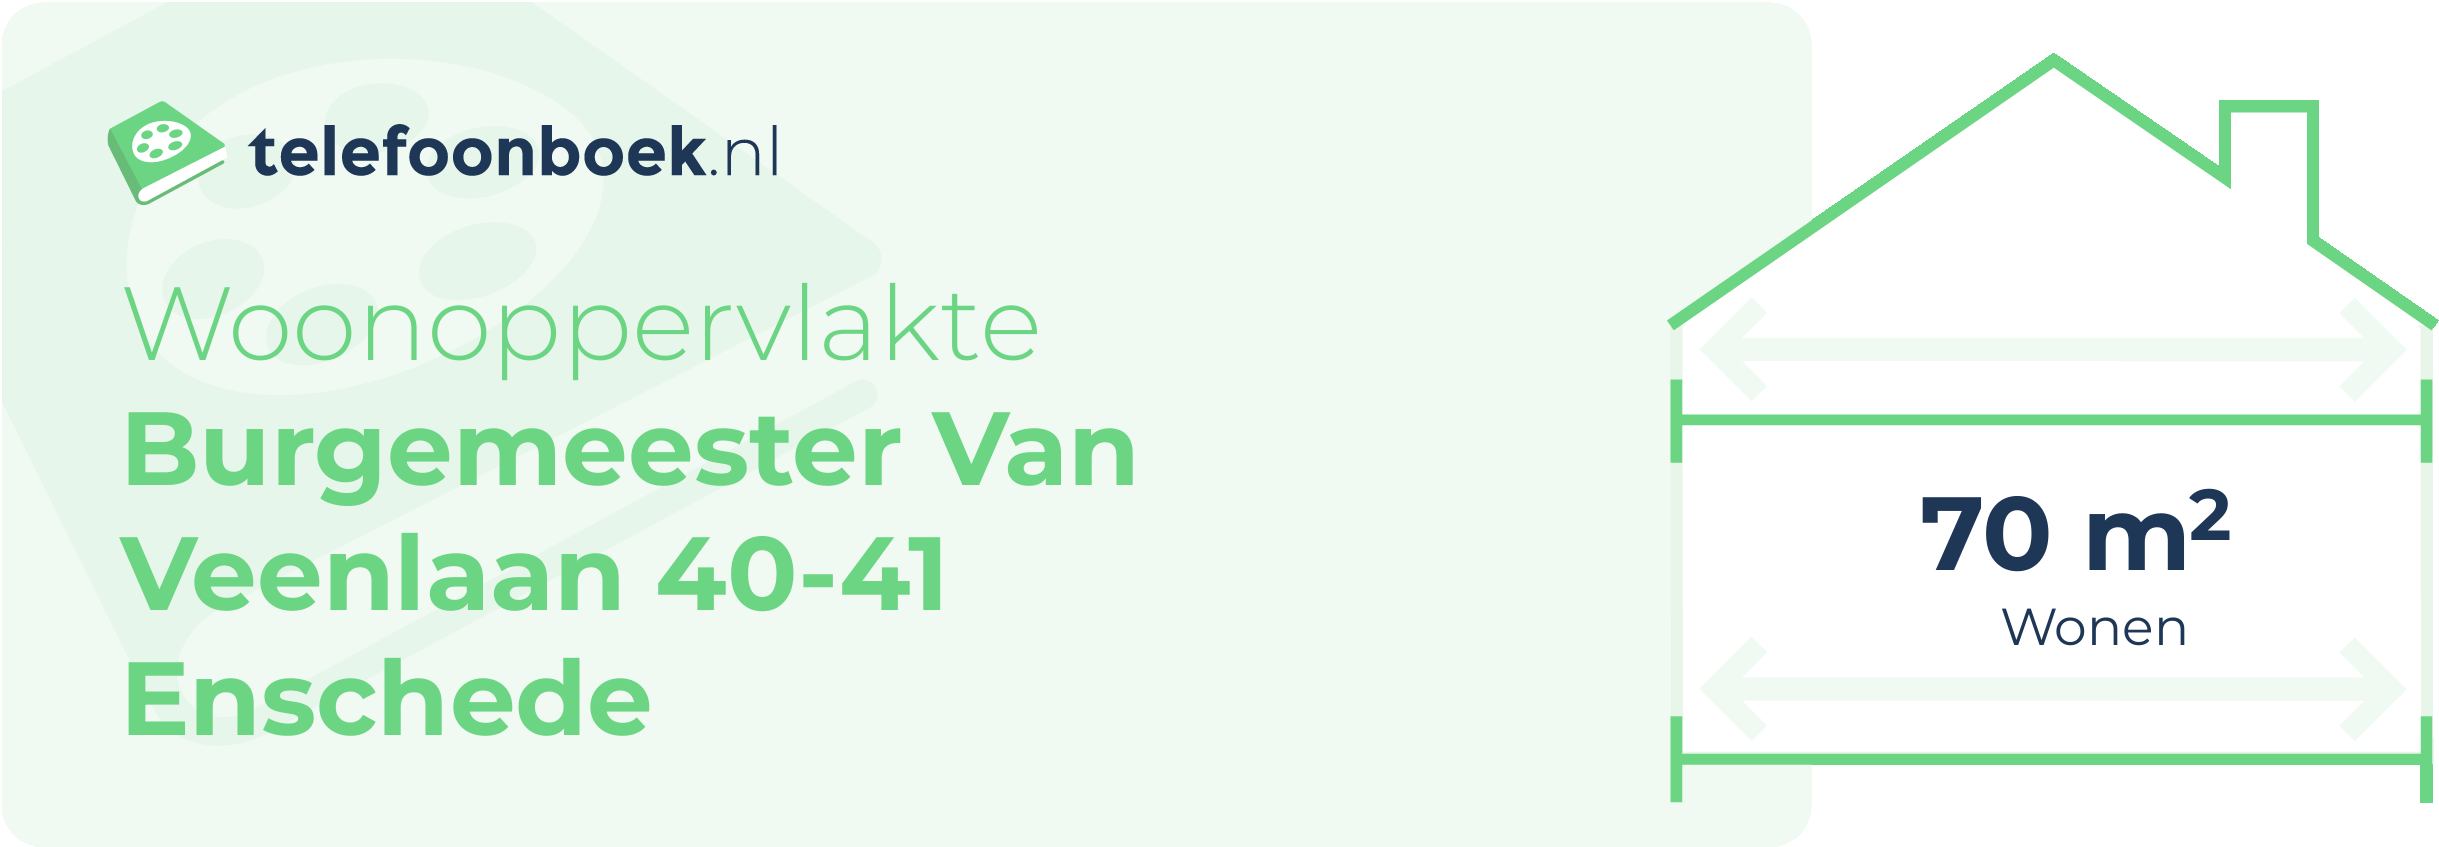 Woonoppervlakte Burgemeester Van Veenlaan 40-41 Enschede